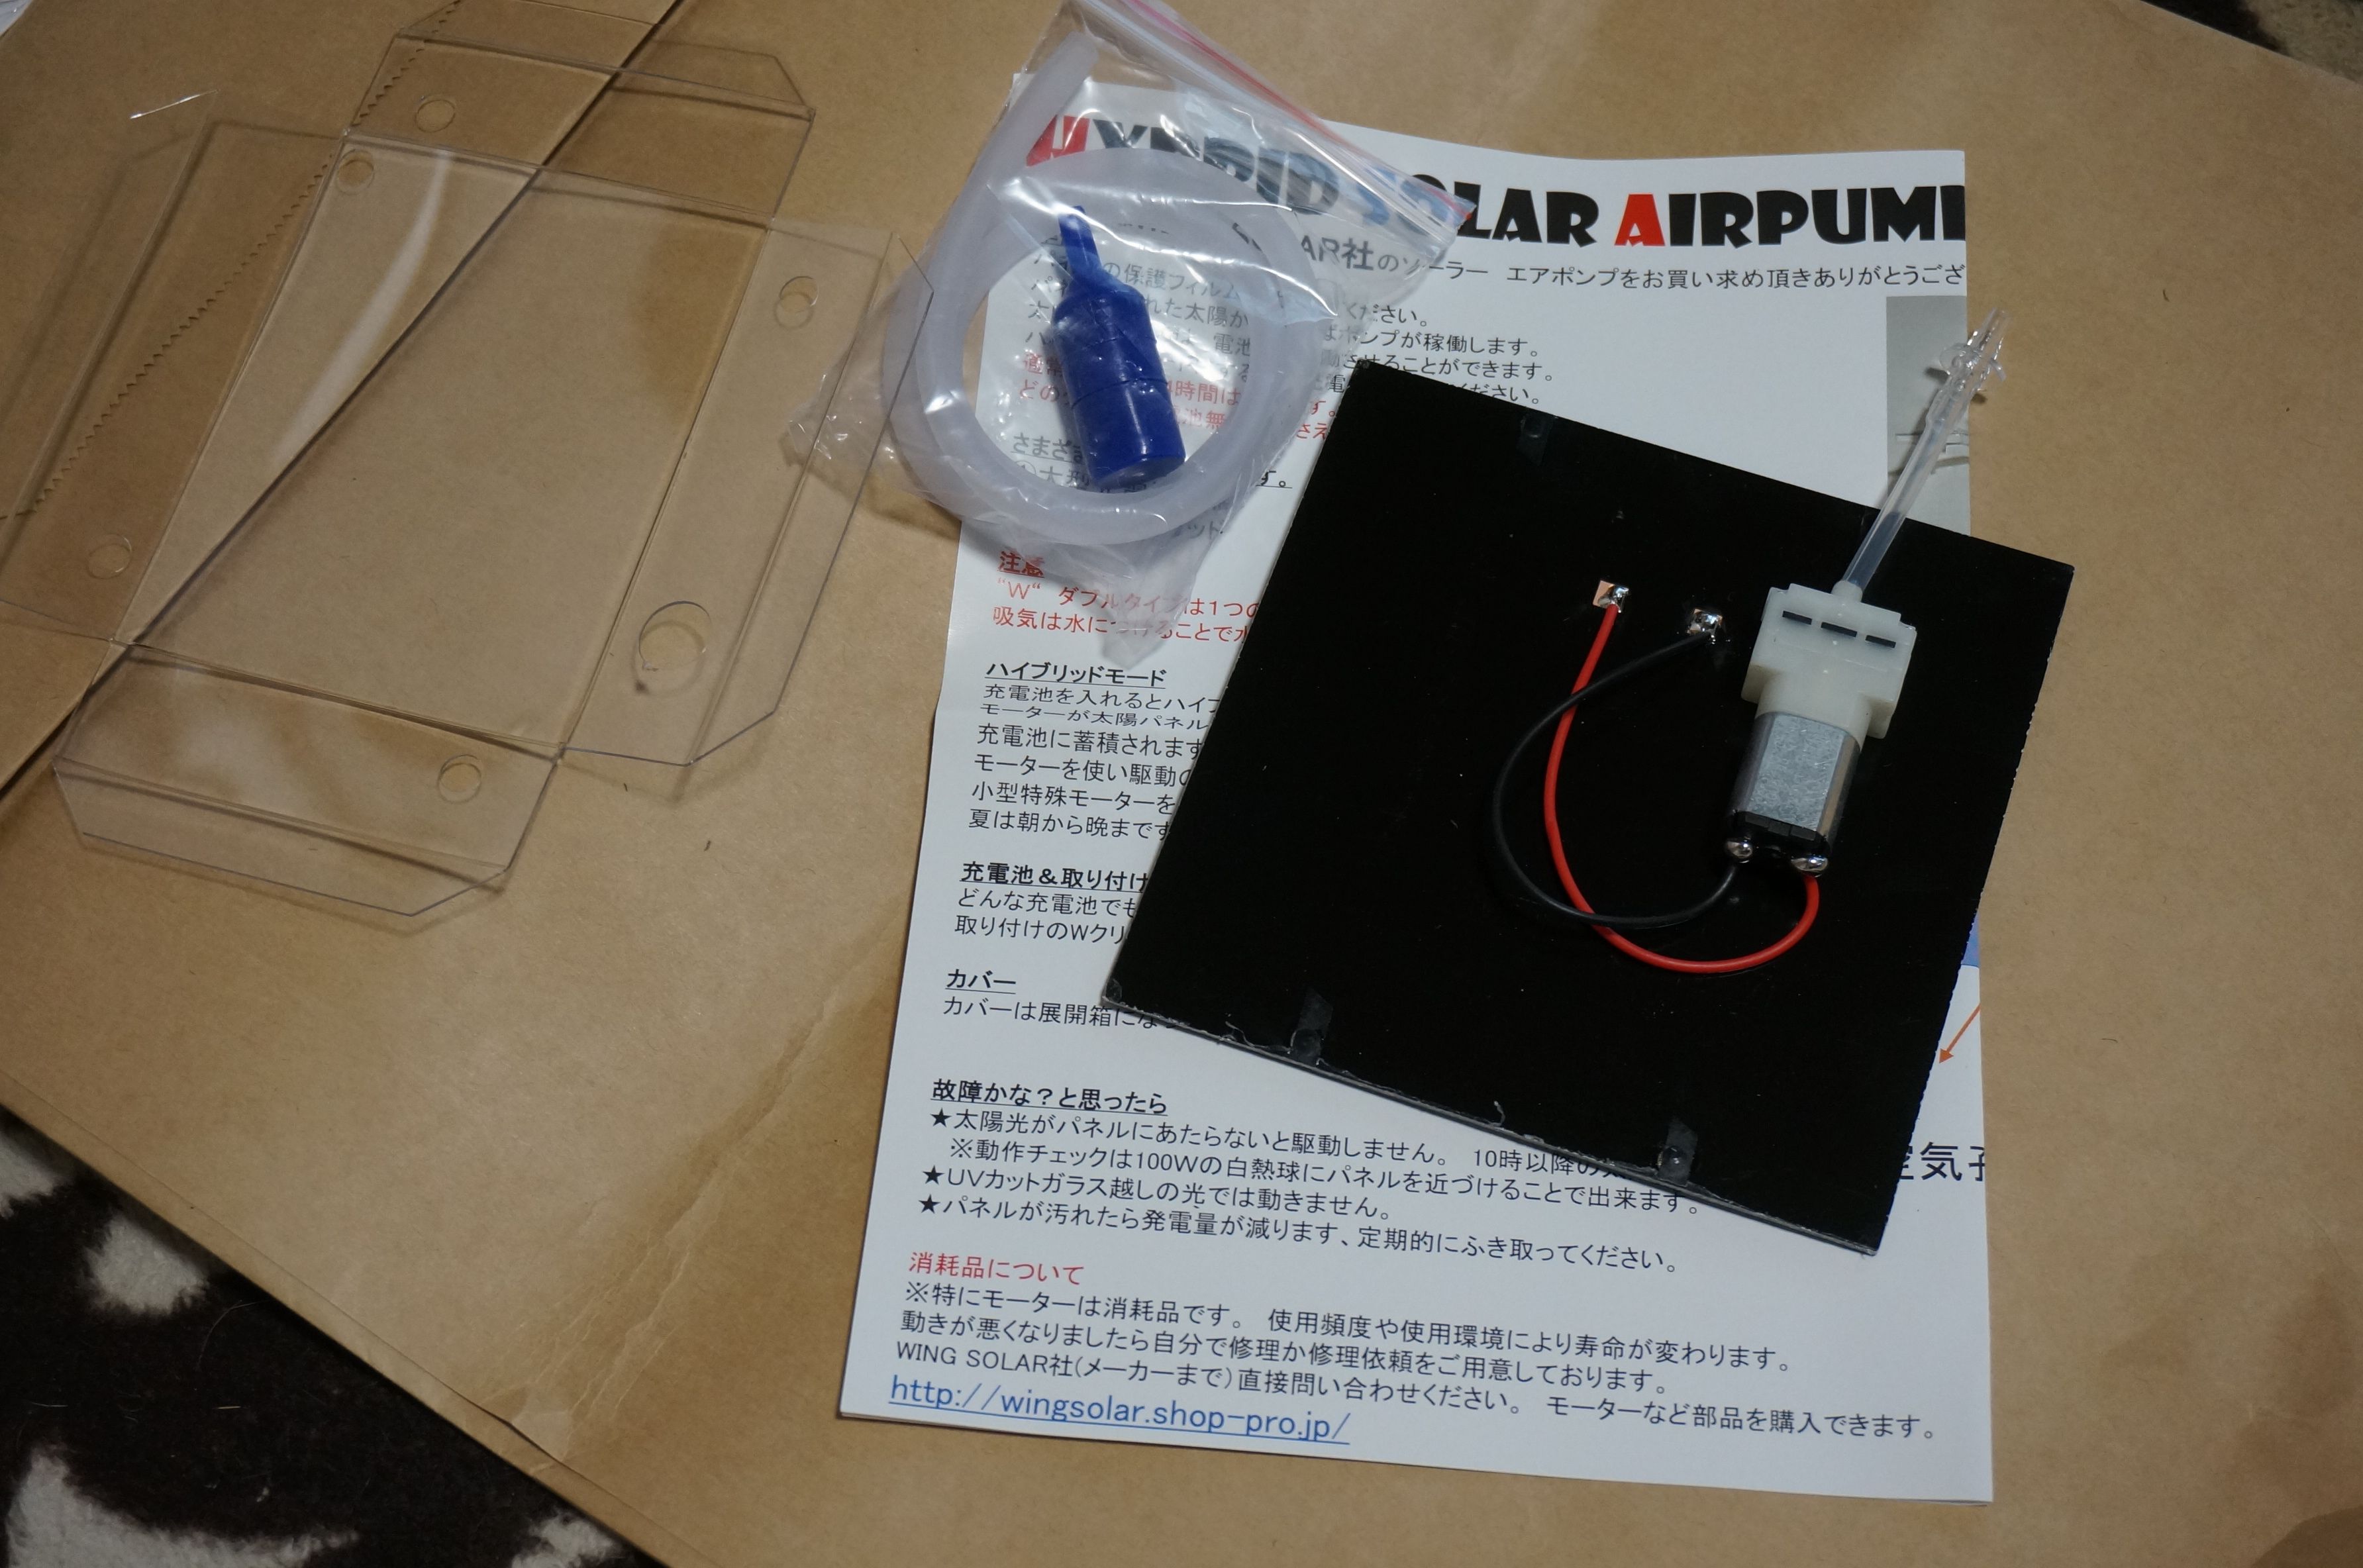 ソーラーエアーポンプが届きました ヨッシイのブログ 楽天ブログ